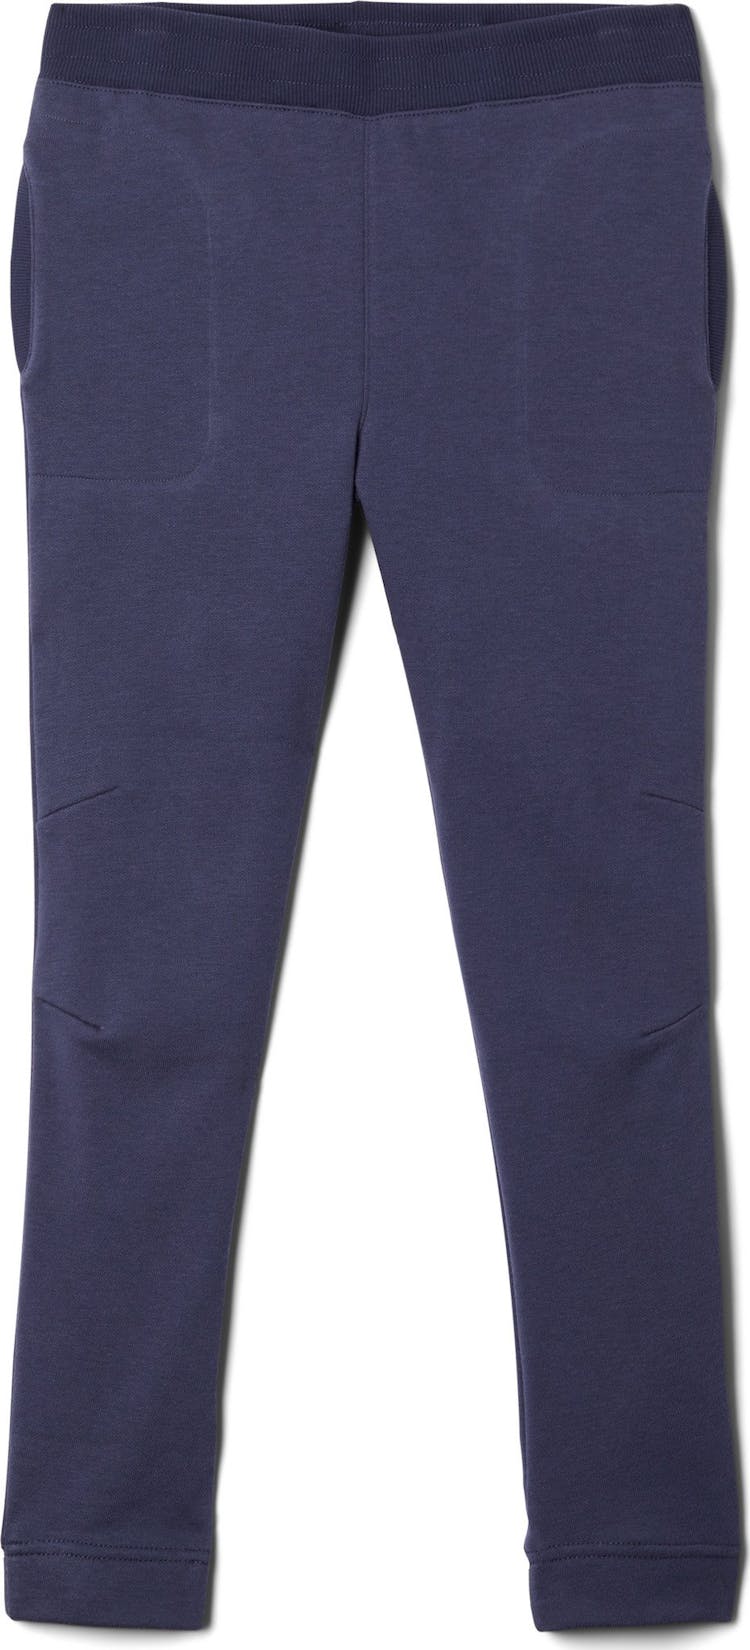 Numéro de l'image de la galerie de produits 1 pour le produit Pantalon de jogging Columbia Branded French Terry - Fille